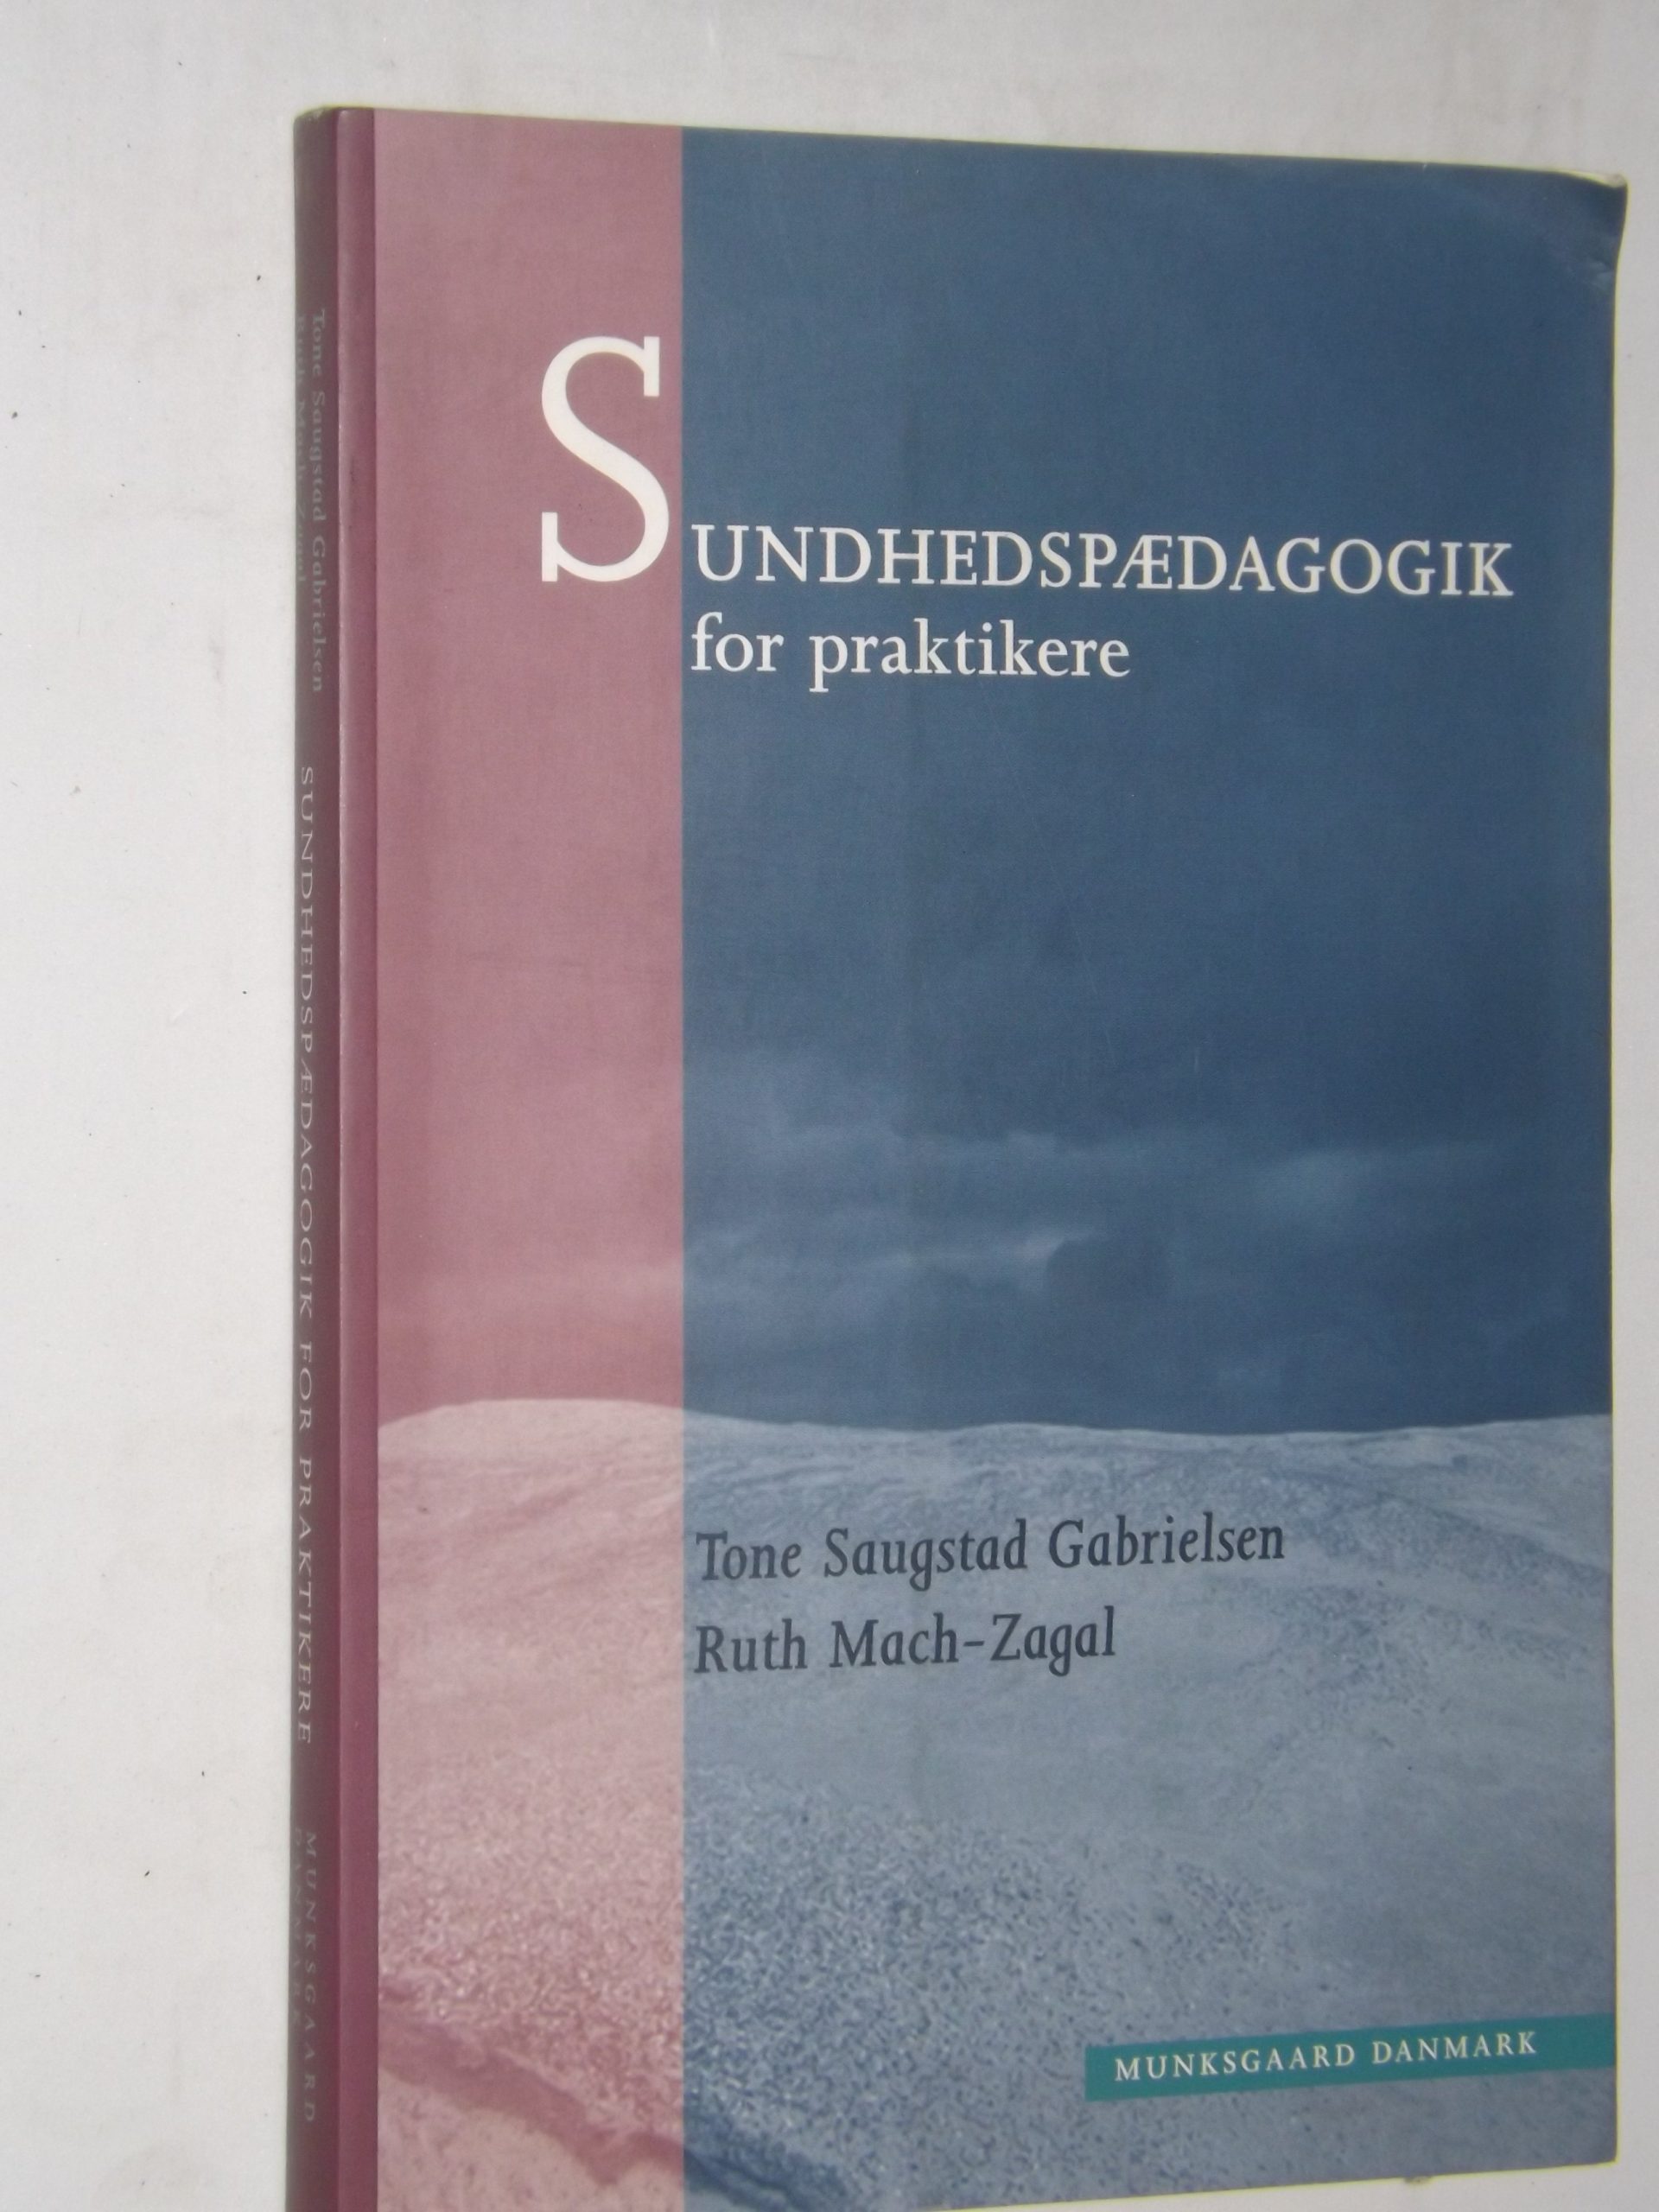 Tone Saugstad Gabrielsen og Ruth Mach-Zagal: Sundhedspædagogik for – bbog.dk – bøger til salg